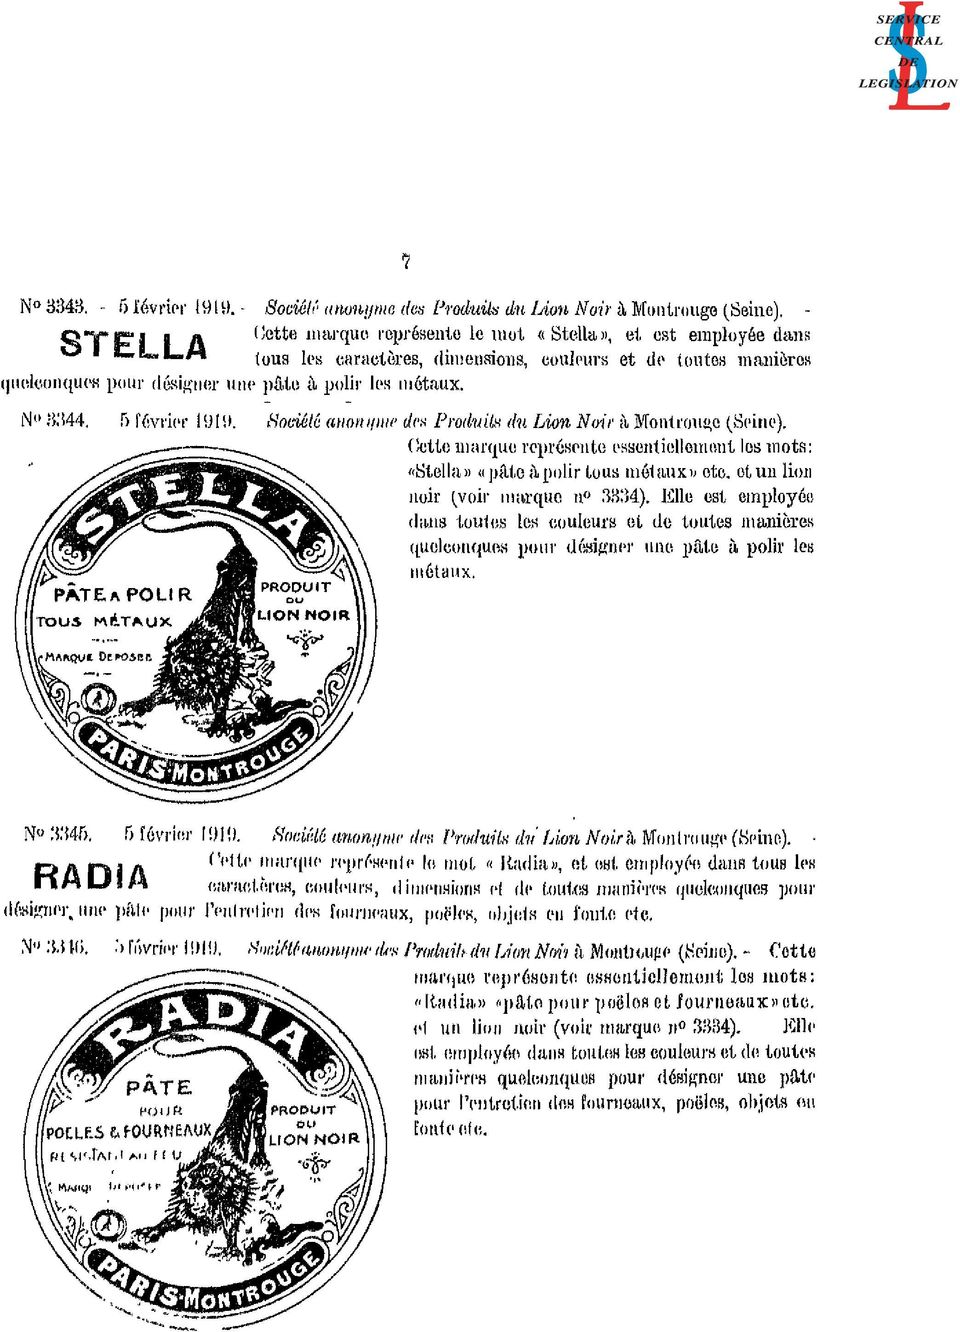 5 février 1919. Société anonyme des Produits du Lion Noir à Montrouge (Seine). Cette marque représente essentiellement les mots: «Stella» «pâte à polir tous métaux» etc.